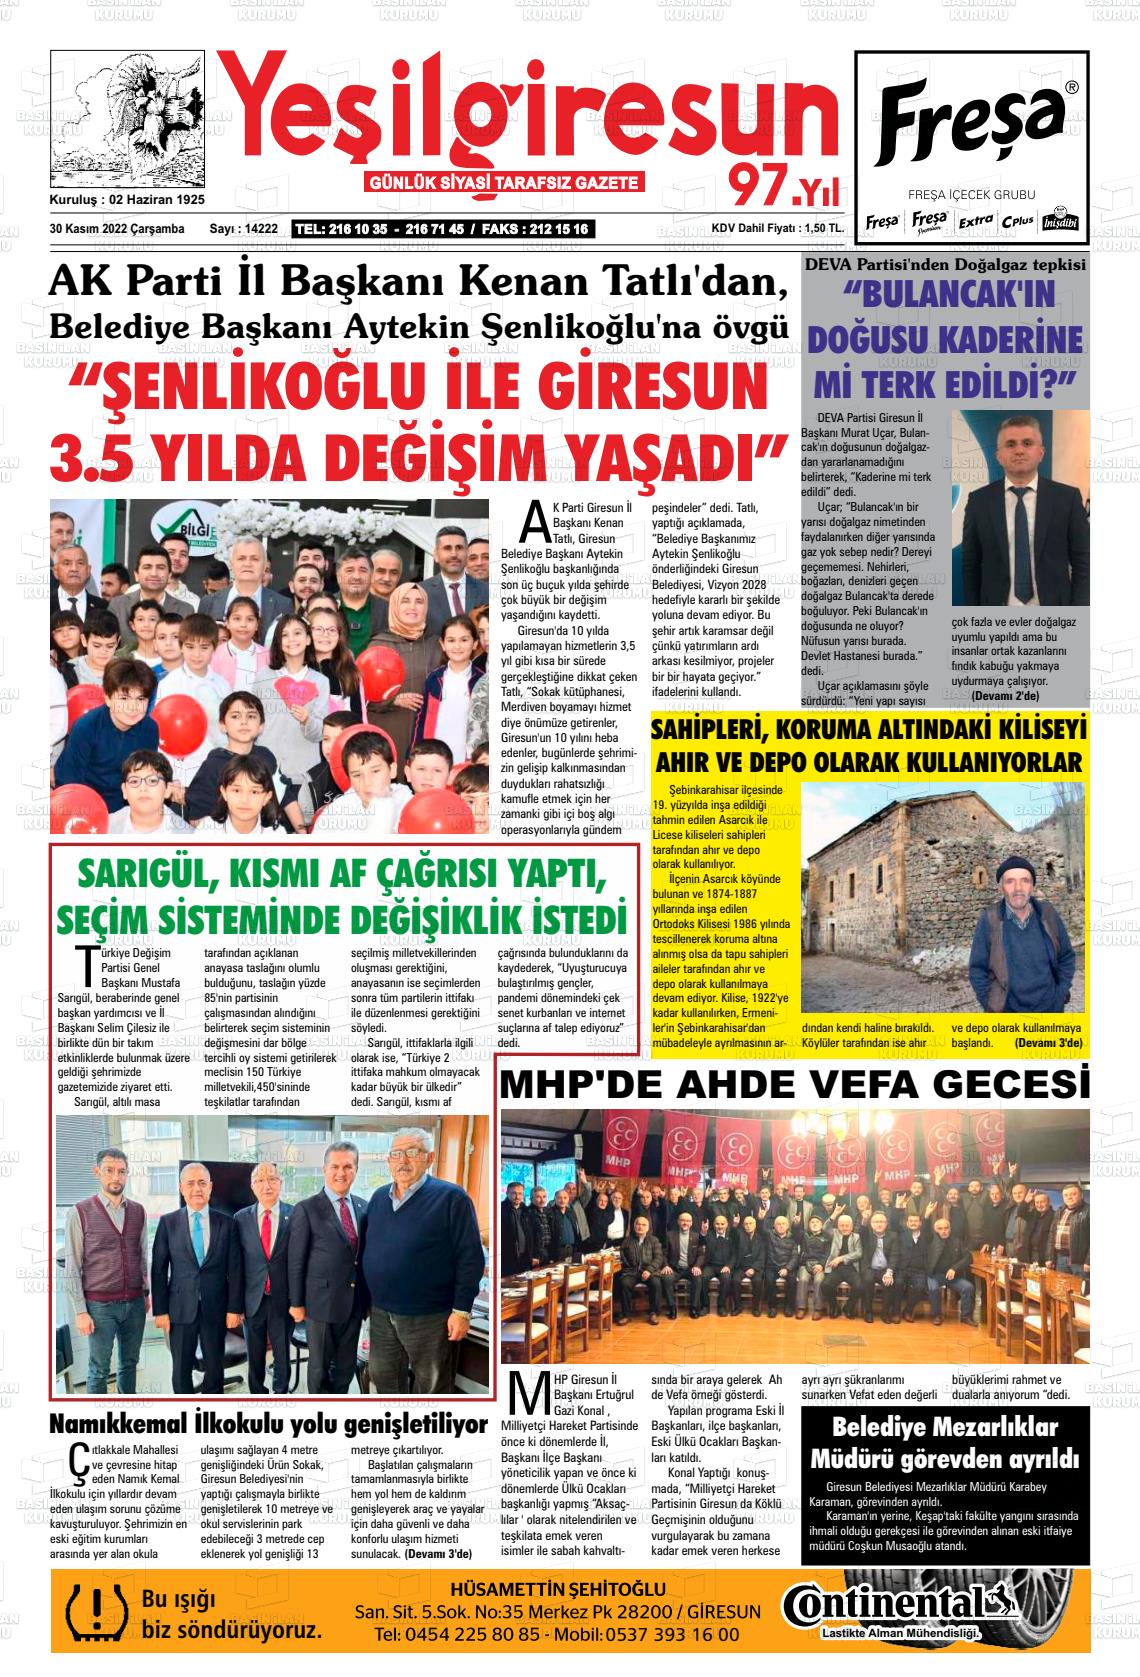 30 Kasım 2022 Yeşil Giresun Gazete Manşeti